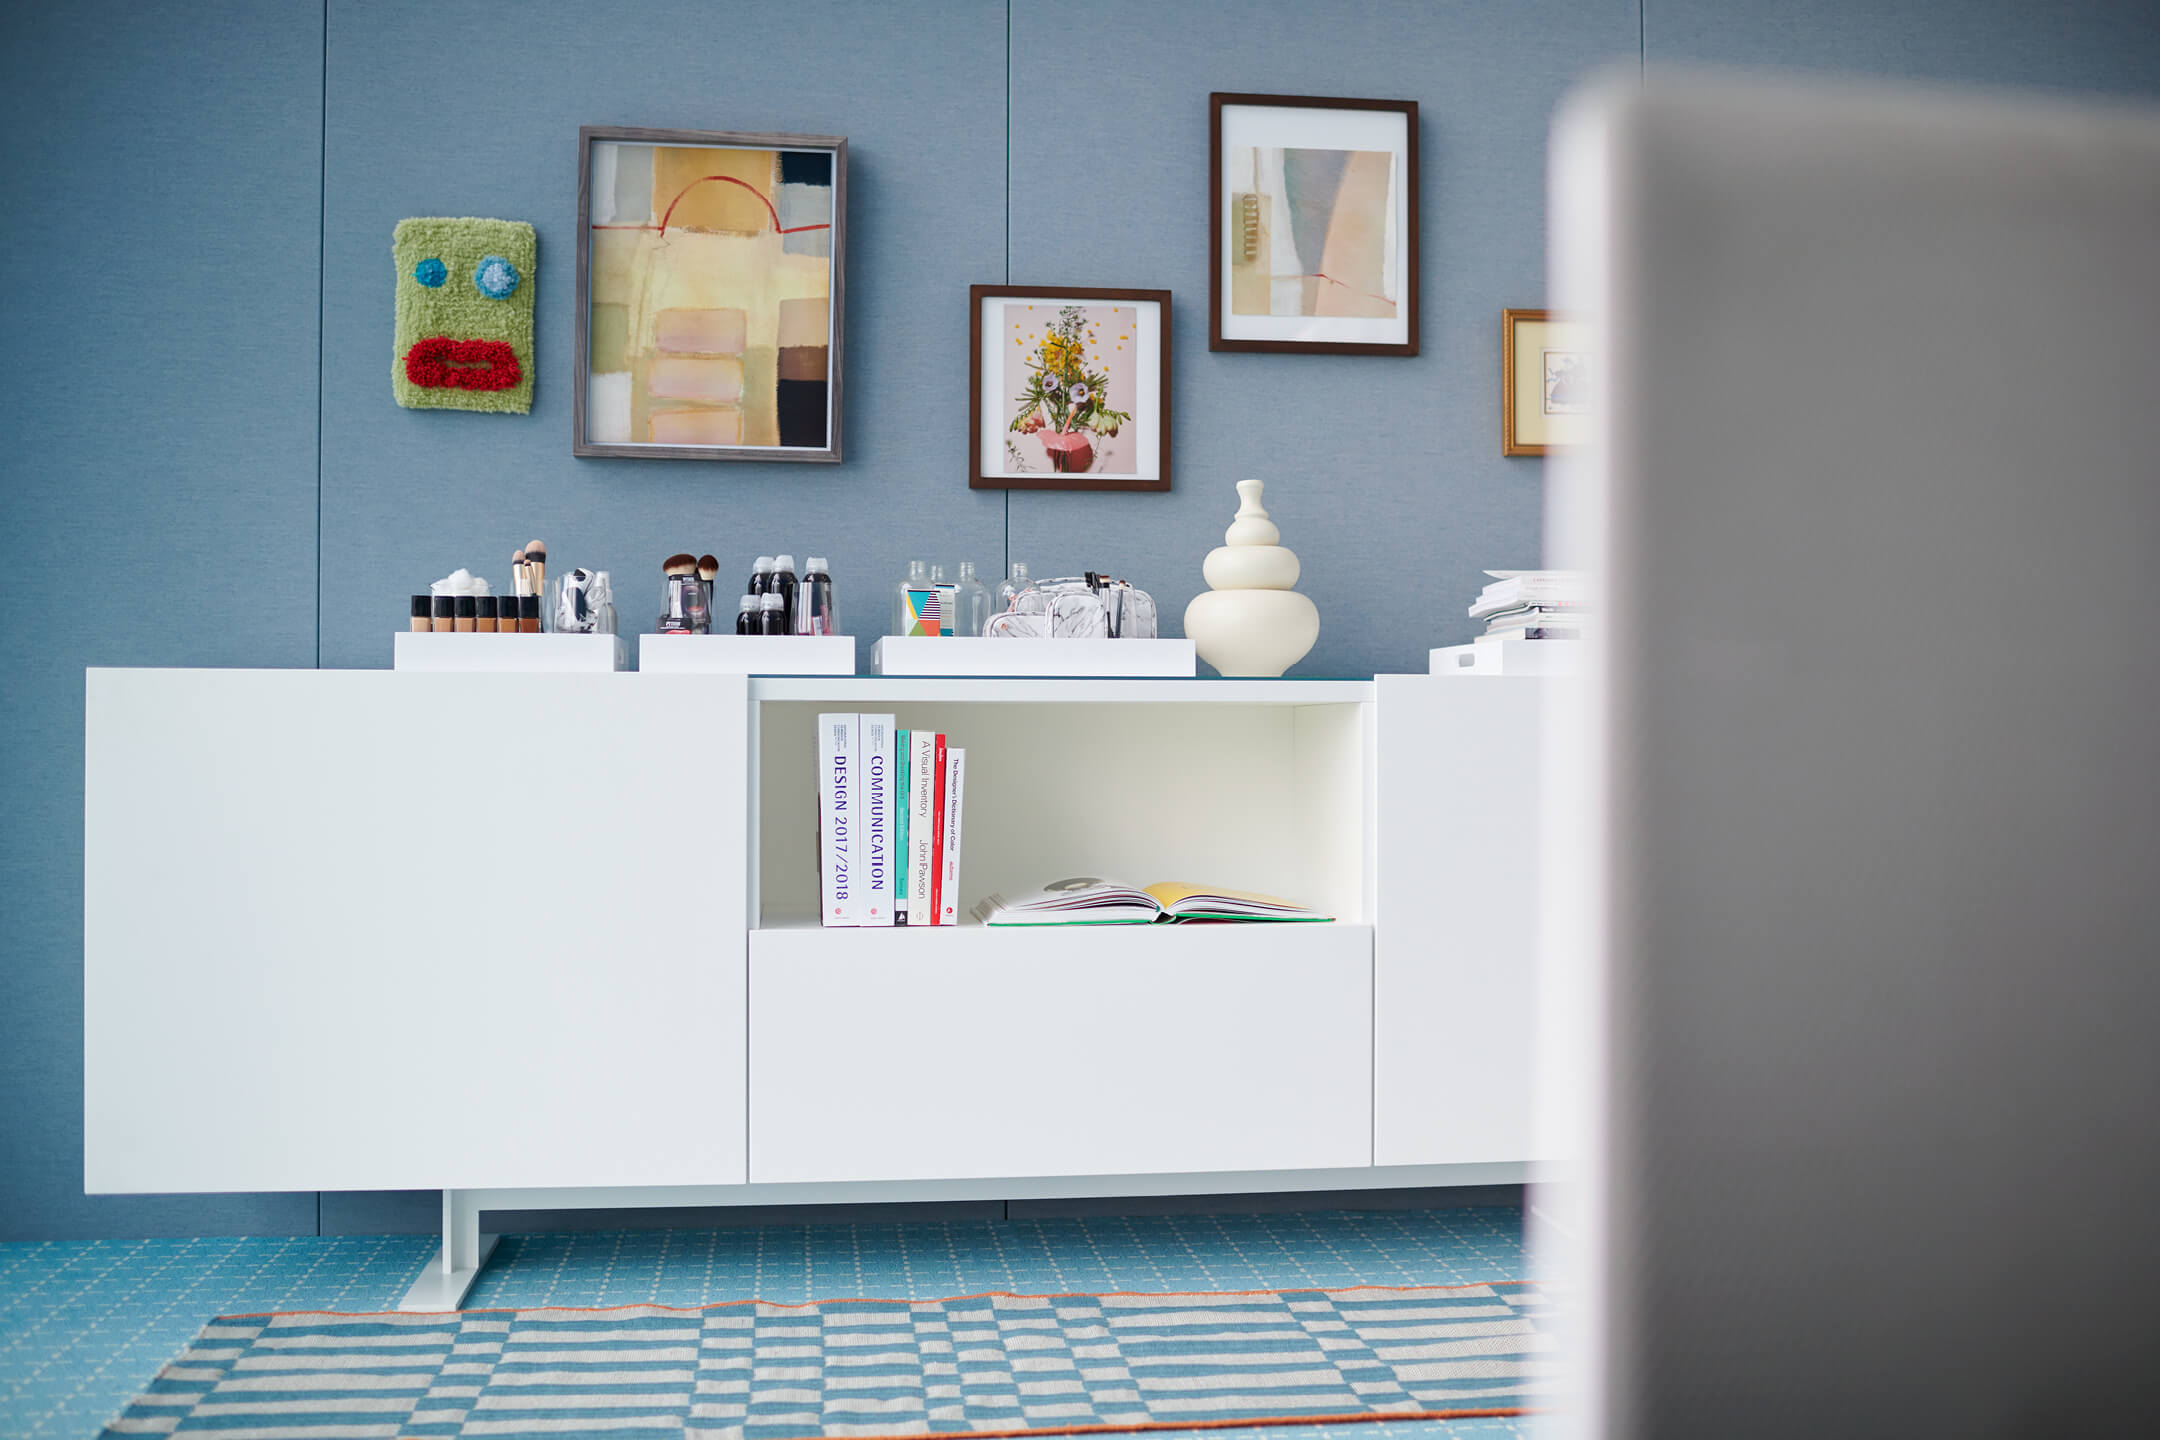 Haworth Giulio Cappellini Designers office storage table in white color in private office